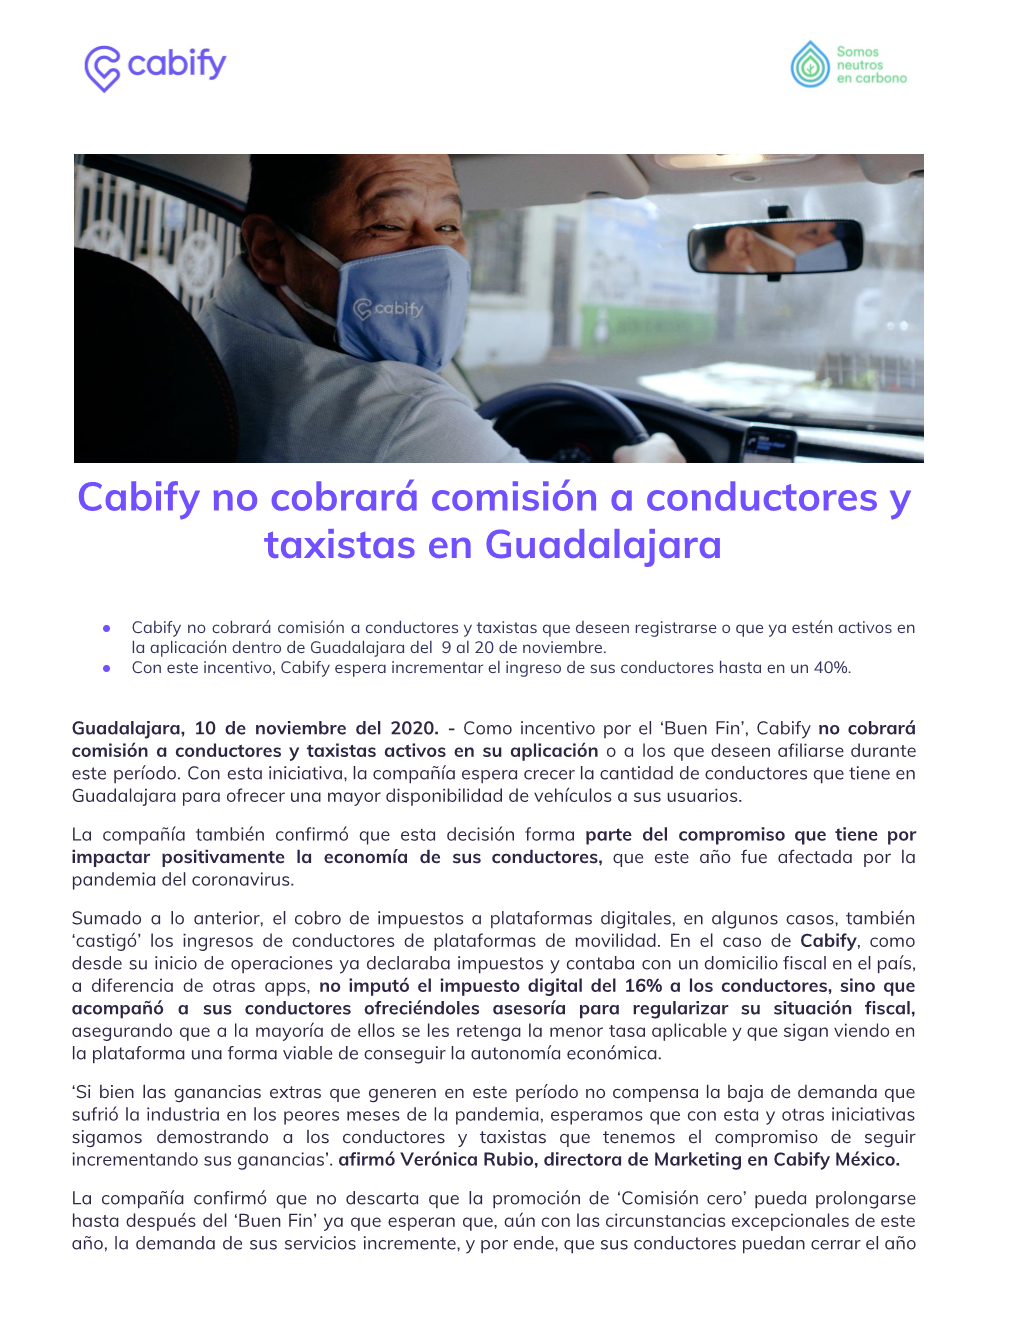 Cabify No Cobrará Comisión a Conductores Y Taxistas En Guadalajara